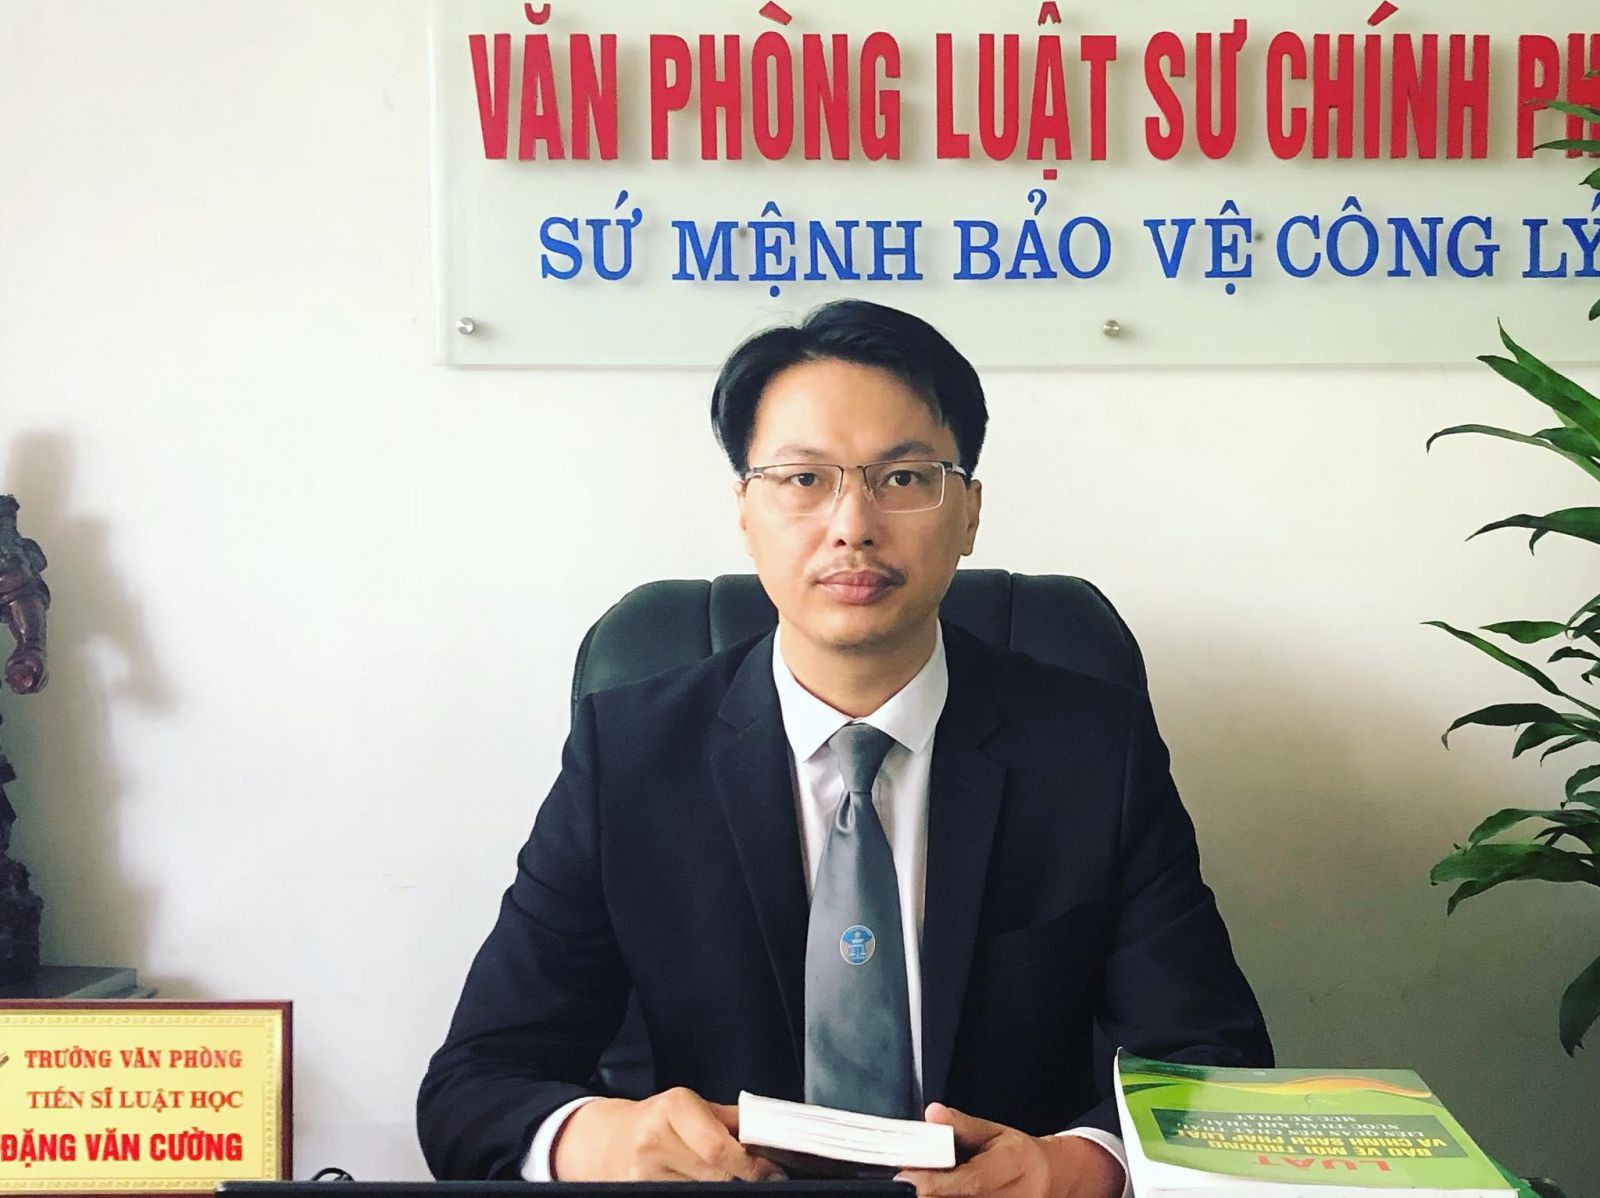 Luật sư Đặng Văn Cường, Văn phòng Luật sư Chính Pháp, Đoàn Luật sư Thành phố Hà Nội.